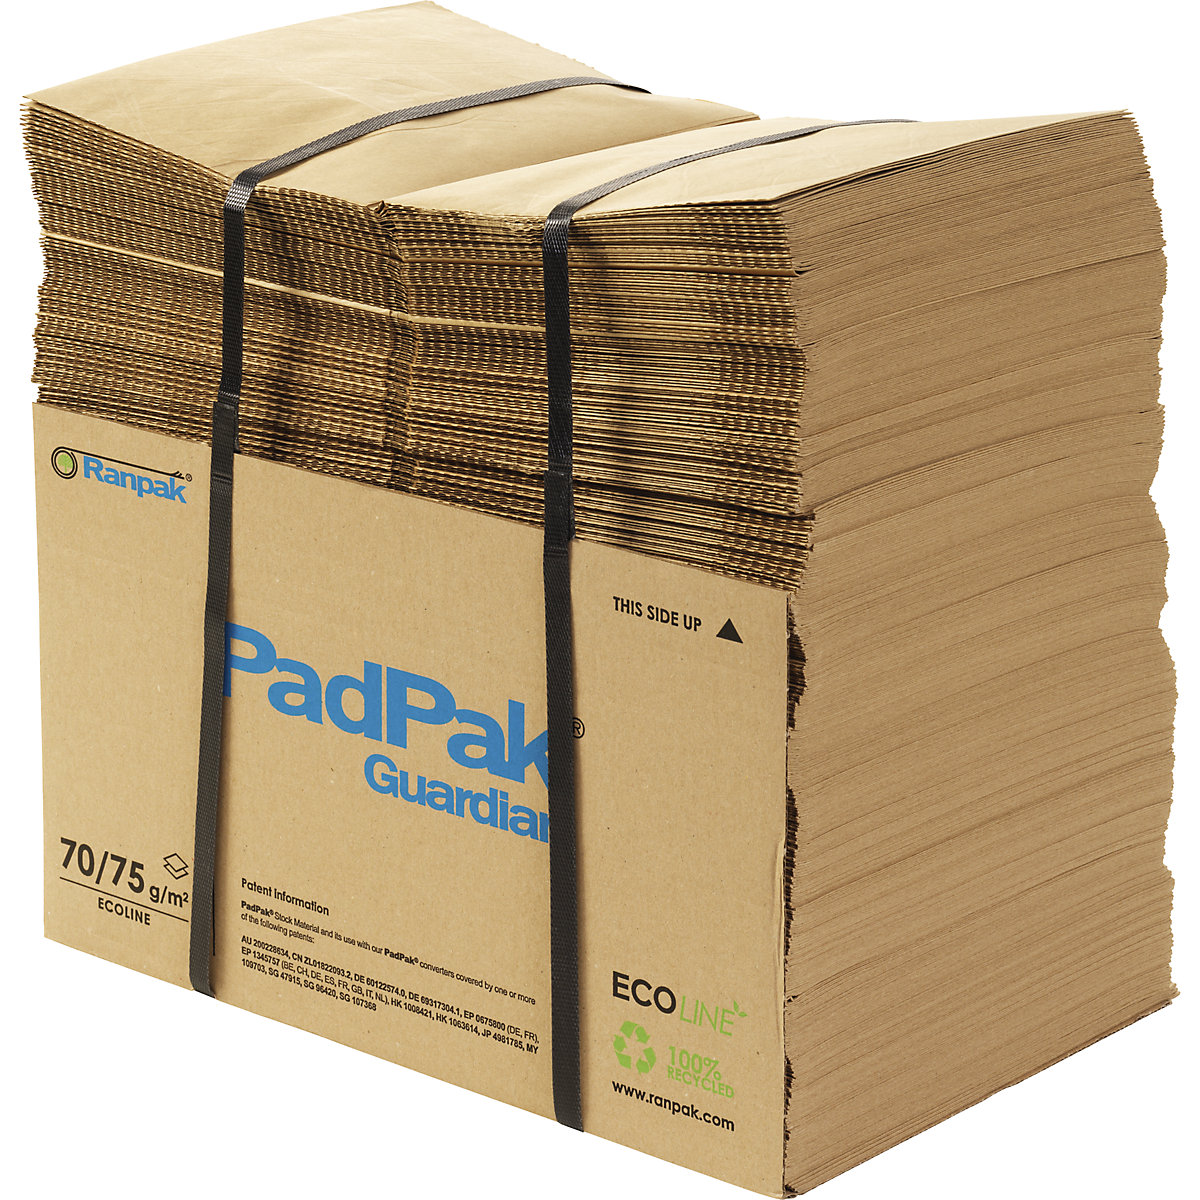 Papier PadPak Guardian, recyclé - terra